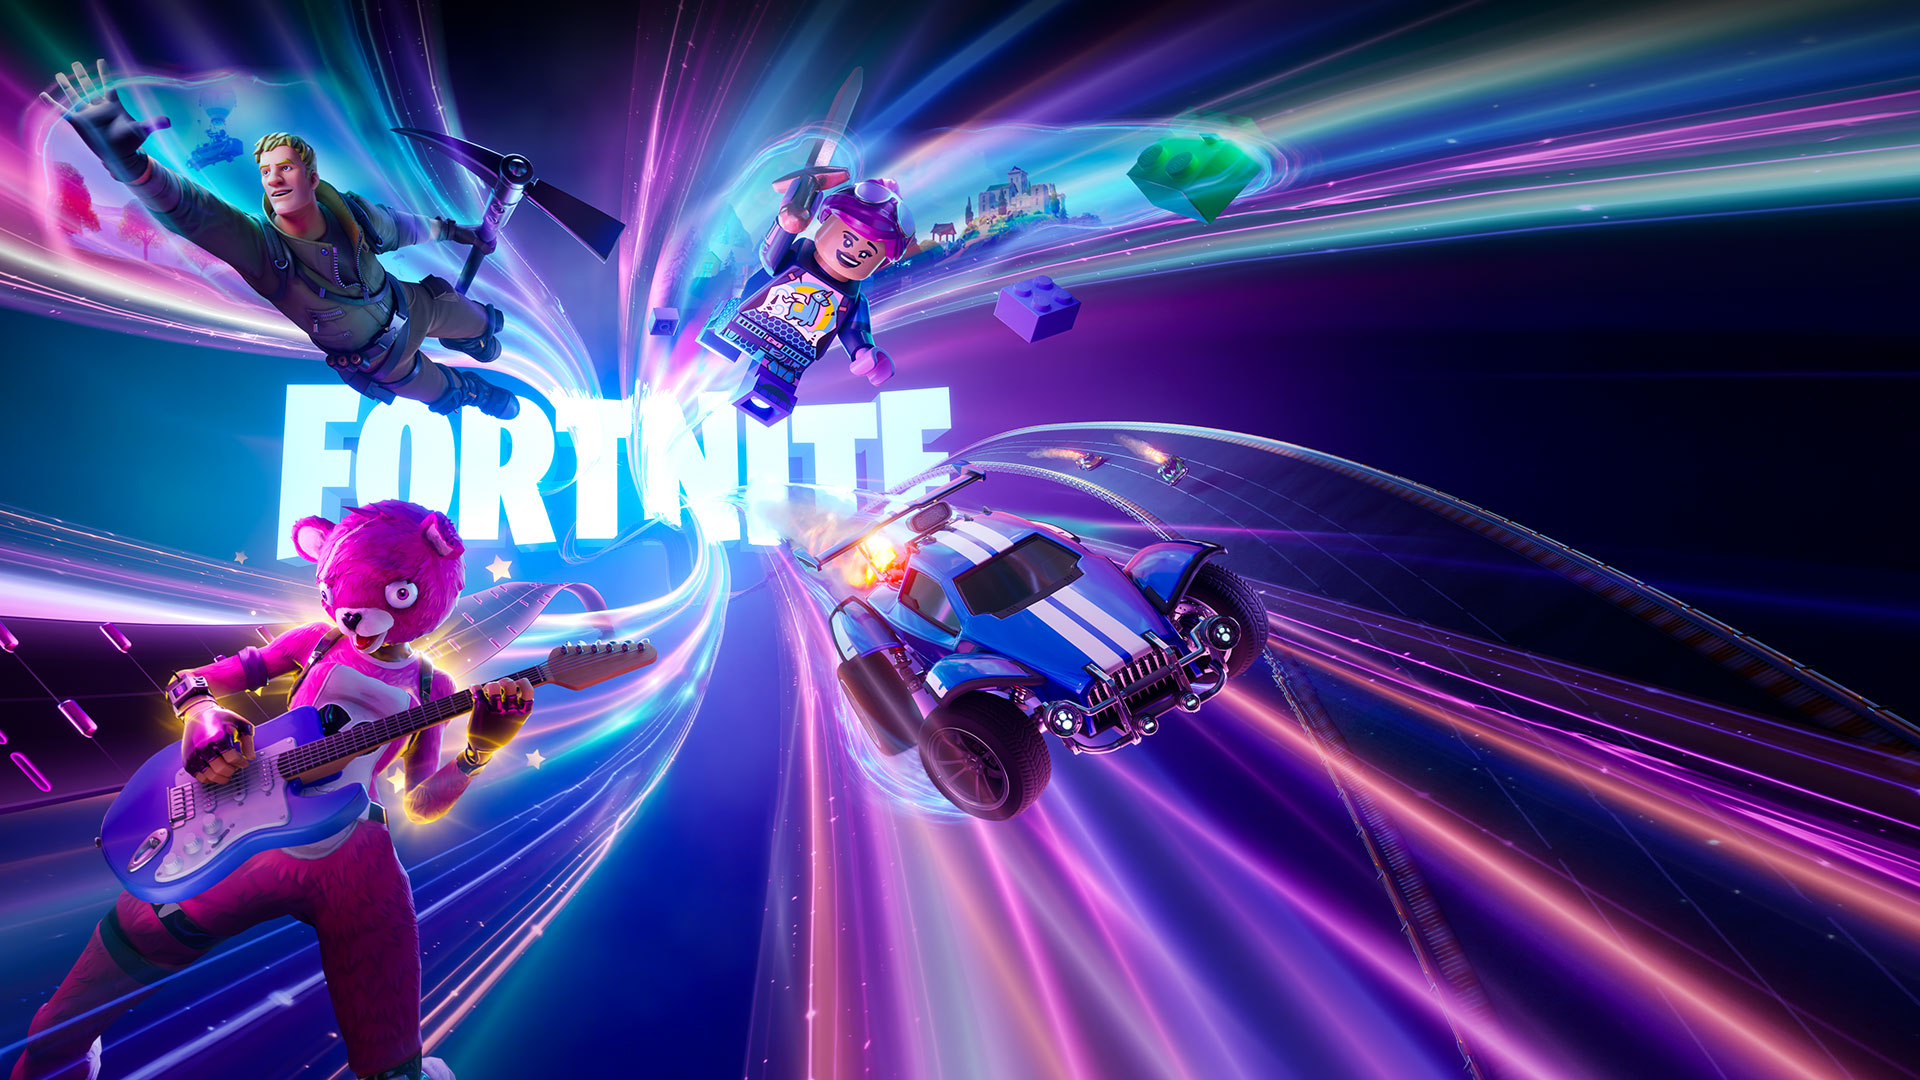 Fortnite-logo, hakkua pitelevä Fortnite-hahmo, kitaraa pitelevä pinkki karhu ja Lego-hahmo sekä rakettiauto lentävät eteenpäin neonkuvioissa.